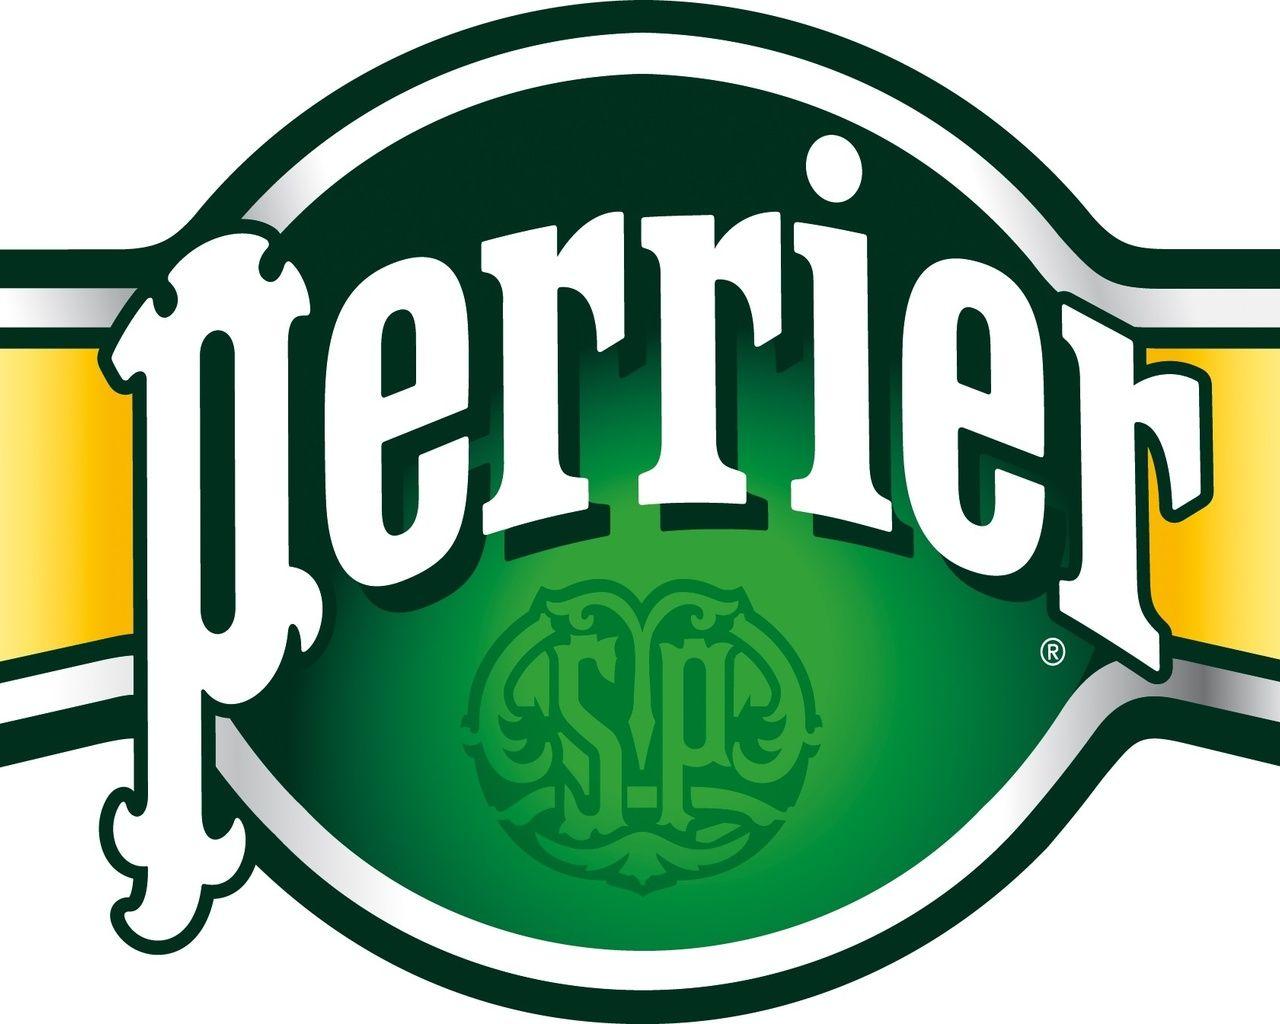 Perrier Logo - Perrier, Water Brands, Perrier Logo, Perrier Water Brand